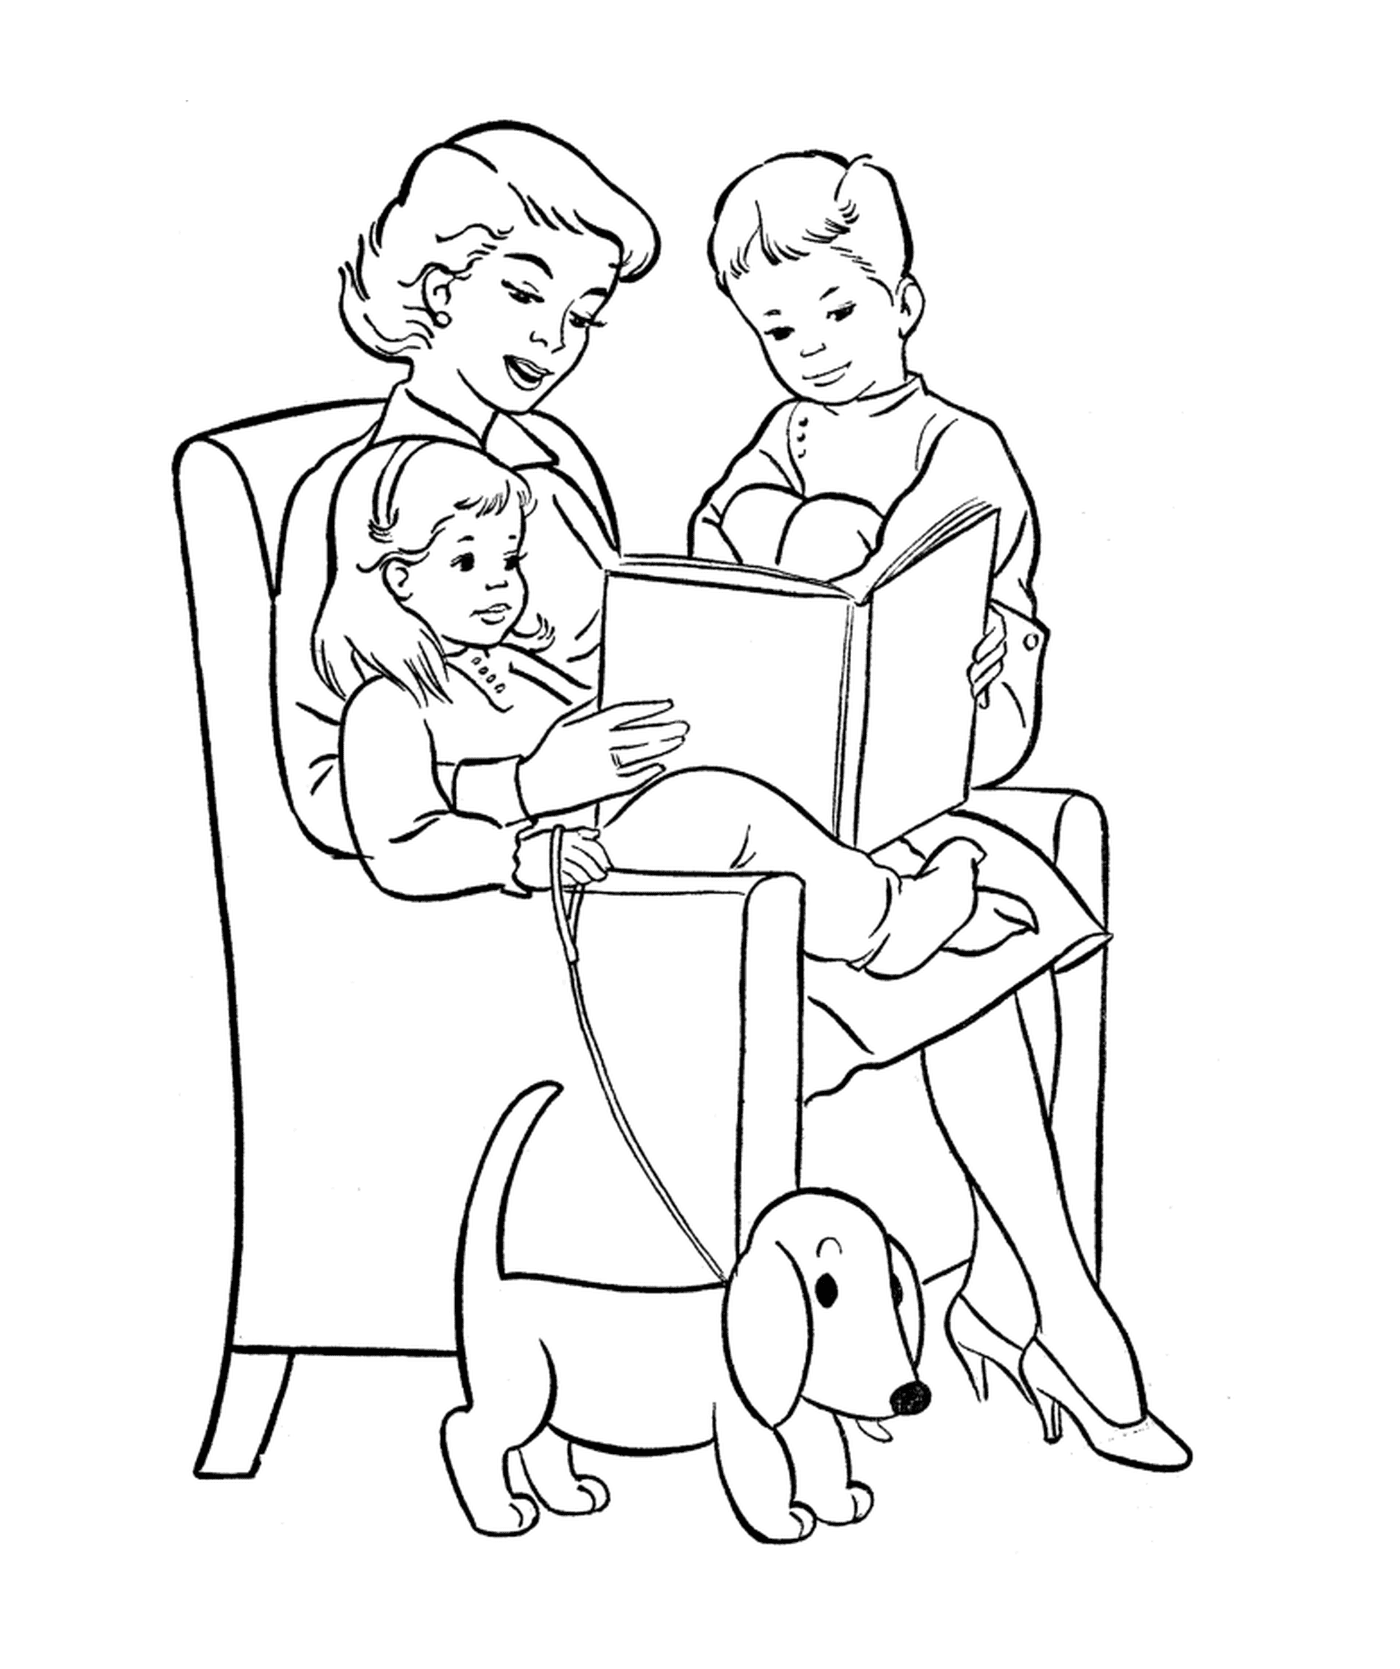  Uma mulher lendo um livro com dois filhos 